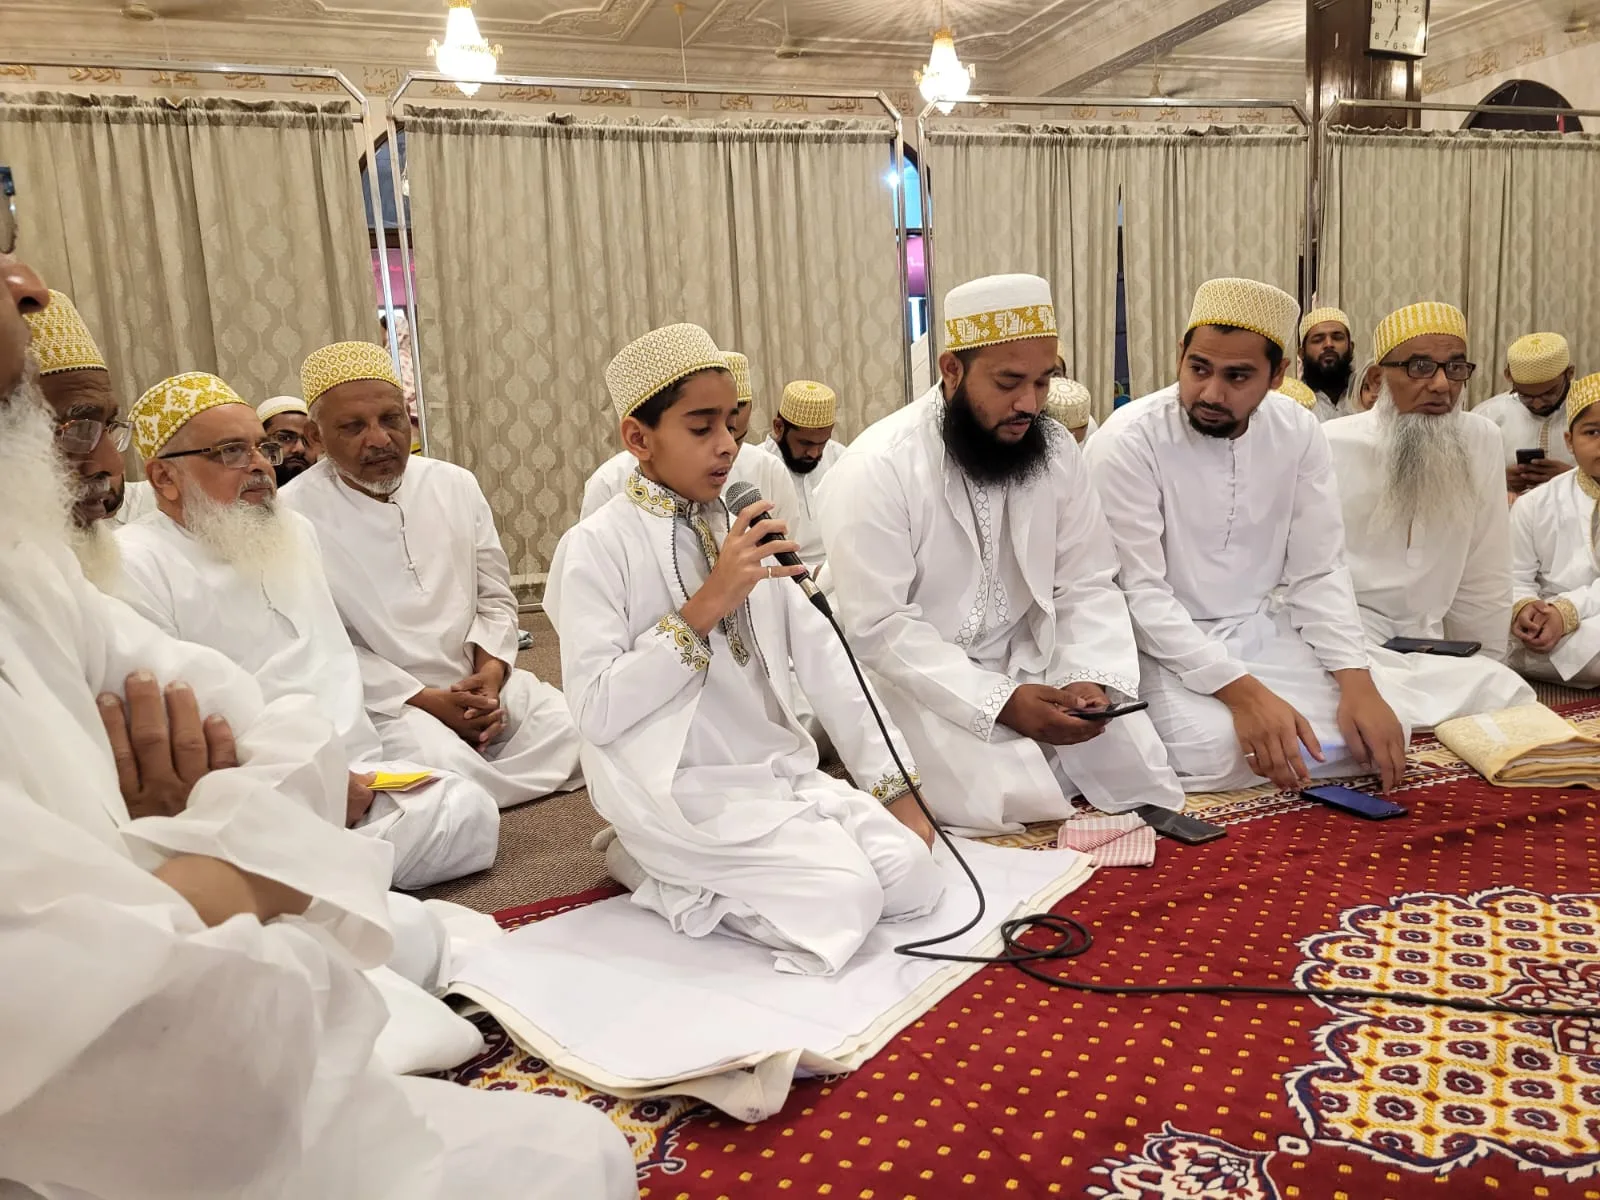 बुरहानपुर सहित देशभर में दाऊदी बोहरा समाजजनों ने उत्साह के साथ मनाई ईद, एक दूसरे को गले मिलकर दी मुबारकबादी | New India Times